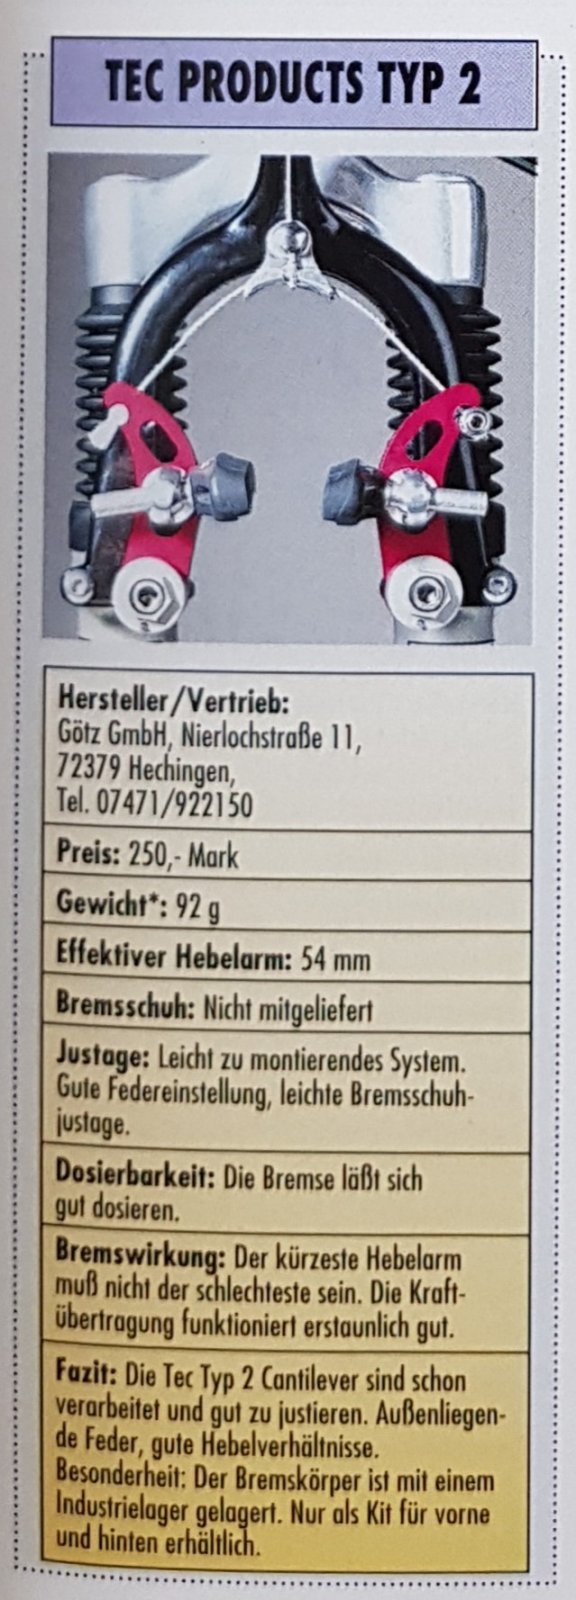 TEC Cantilever-Bremsen 1994.jpg